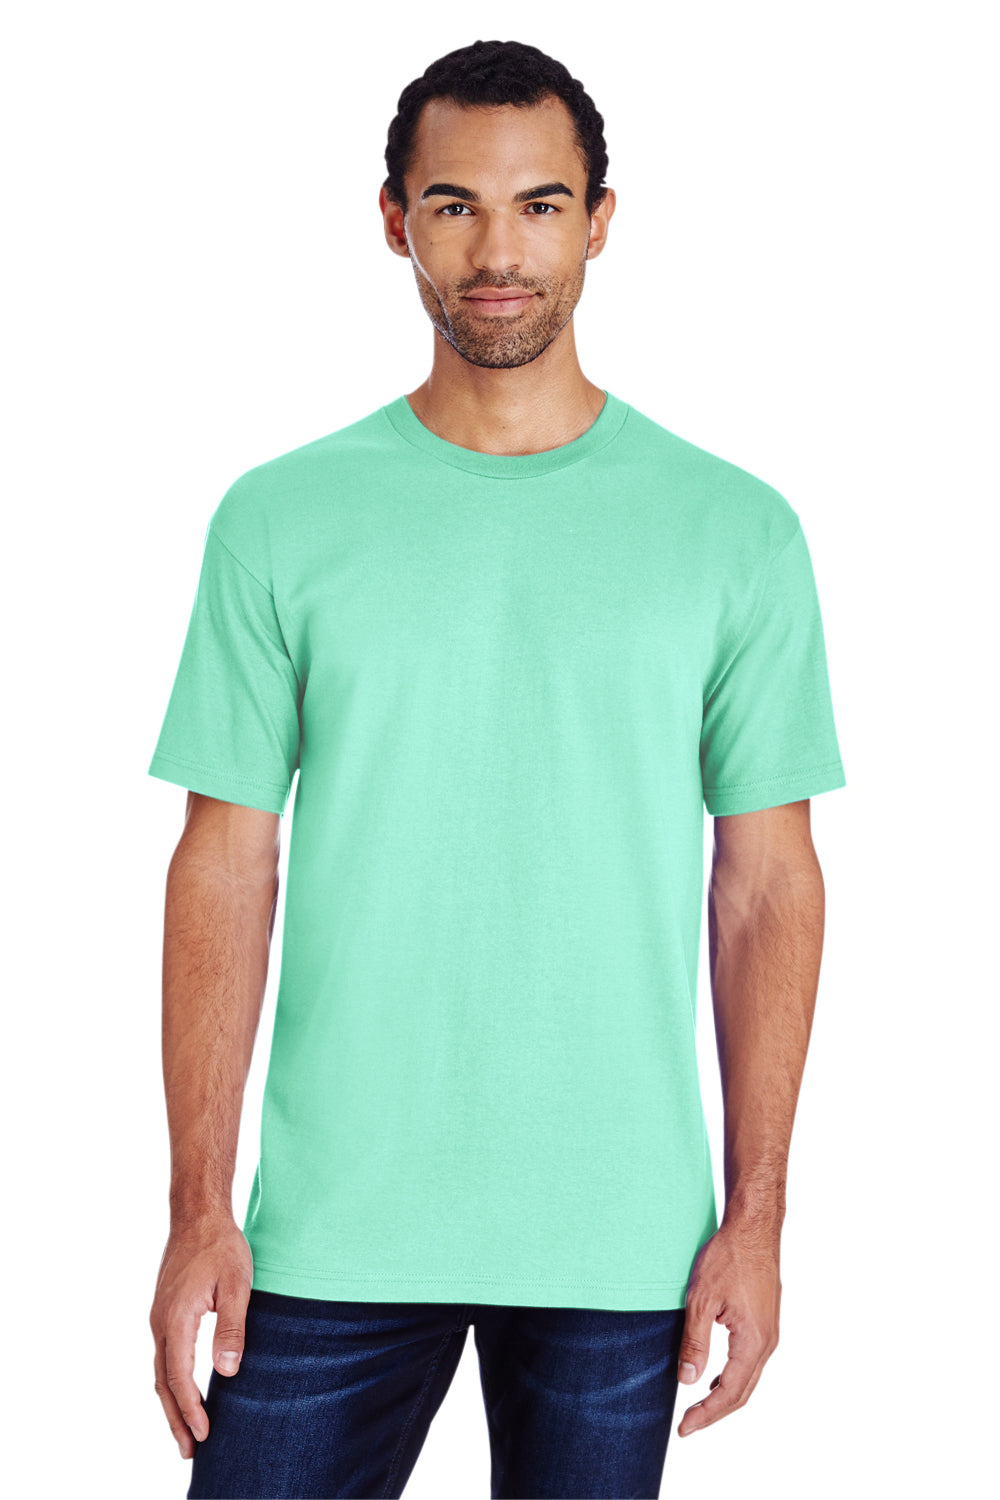 Gildan H000 Mens Hammer Short Sleeve Crewneck T-Shirt Island Reef Green Front